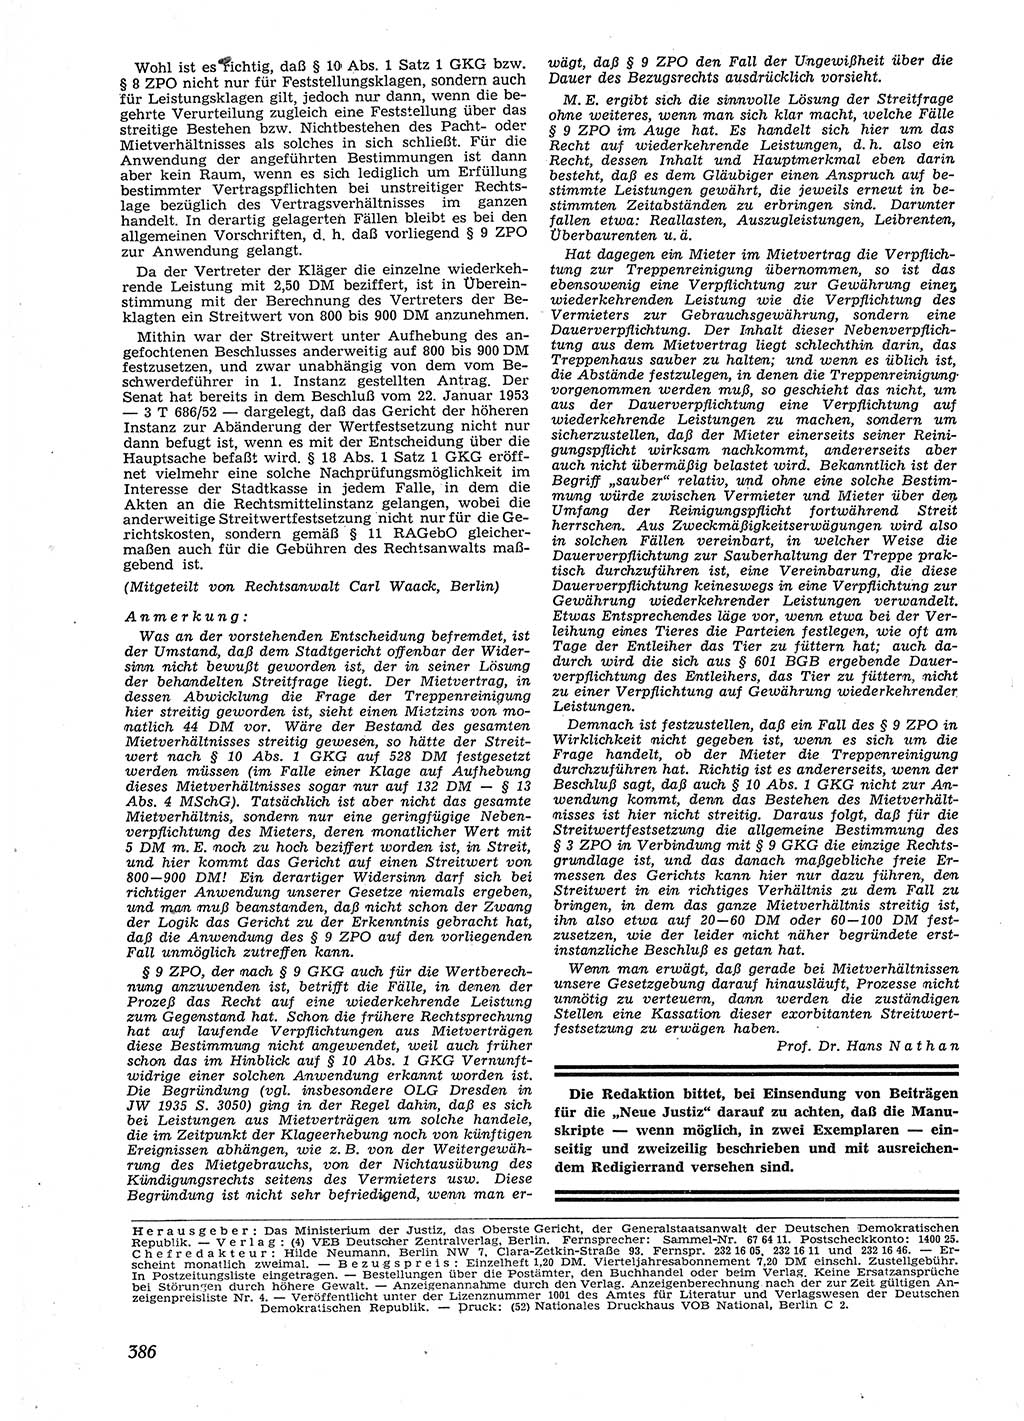 Neue Justiz (NJ), Zeitschrift für Recht und Rechtswissenschaft [Deutsche Demokratische Republik (DDR)], 9. Jahrgang 1955, Seite 386 (NJ DDR 1955, S. 386)